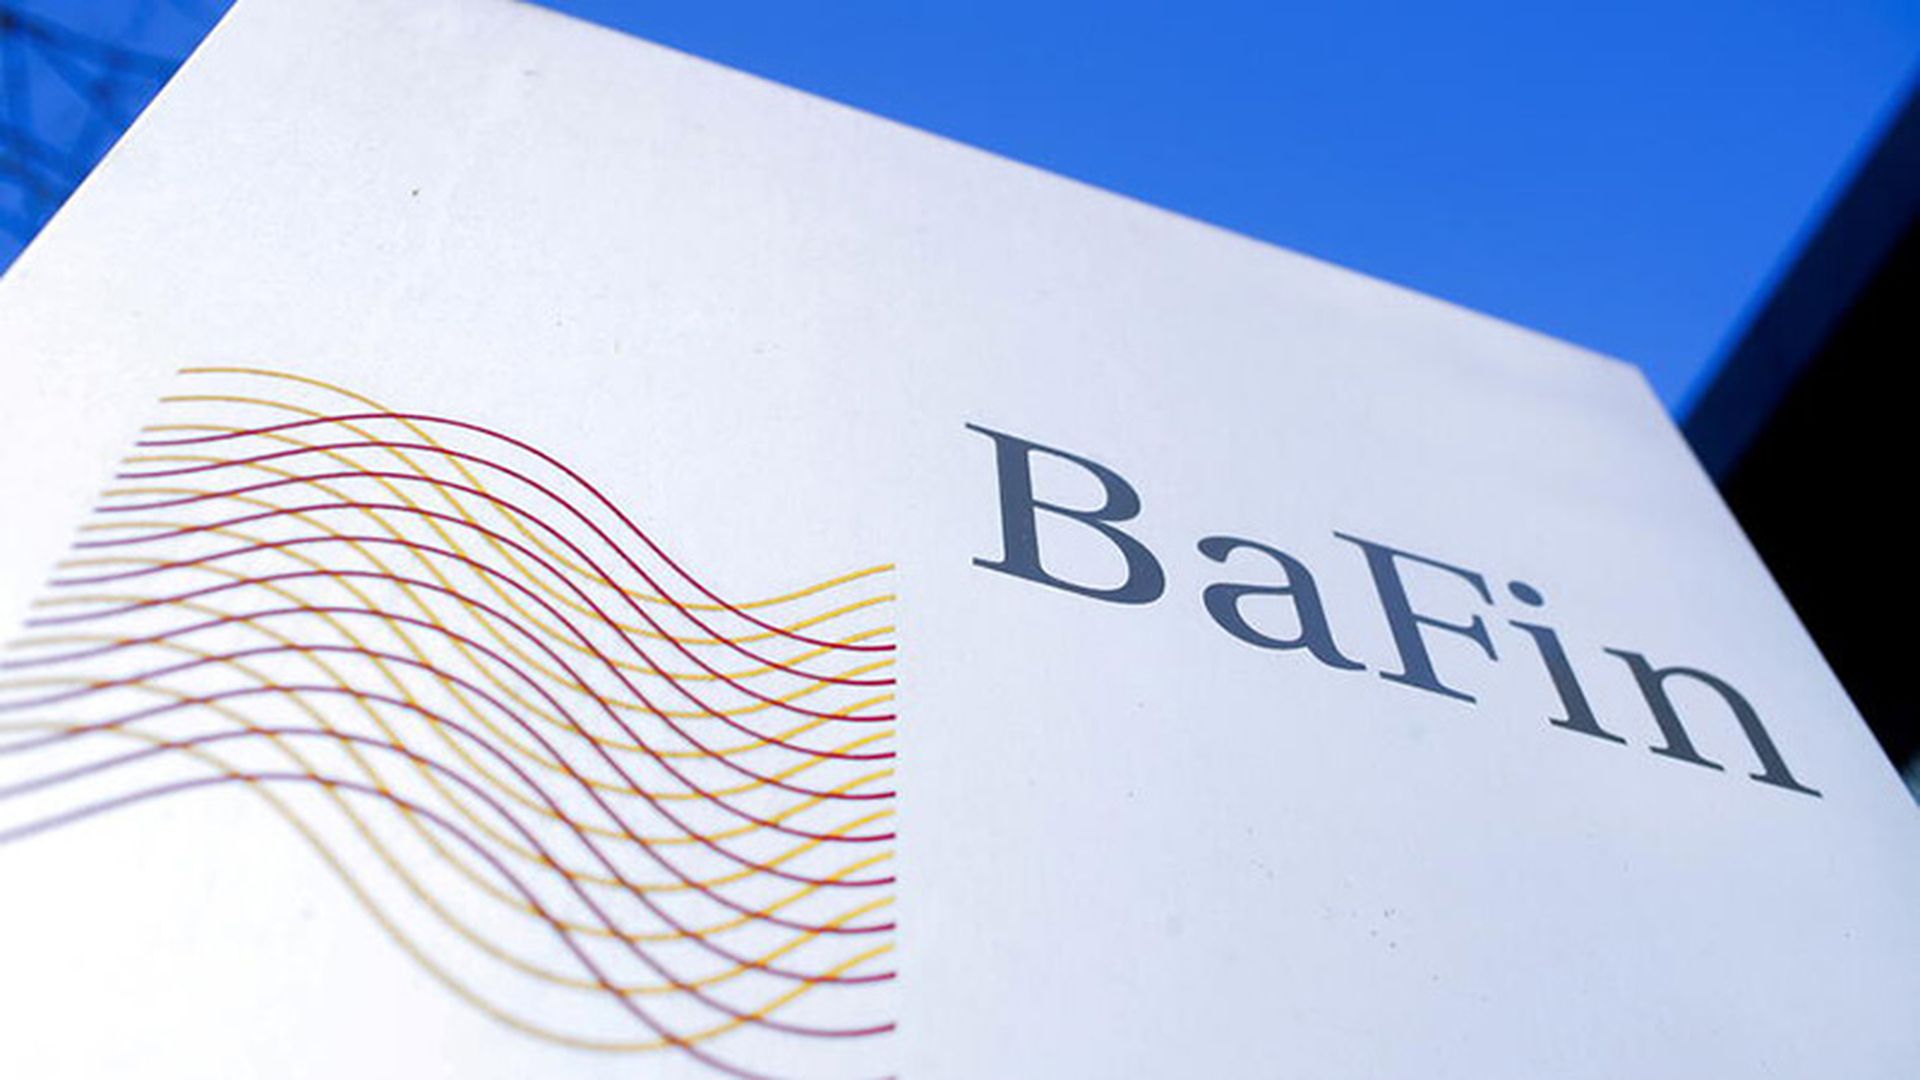 BaFin - Bundesanstalt für Finanzdienstleistungsaufsicht